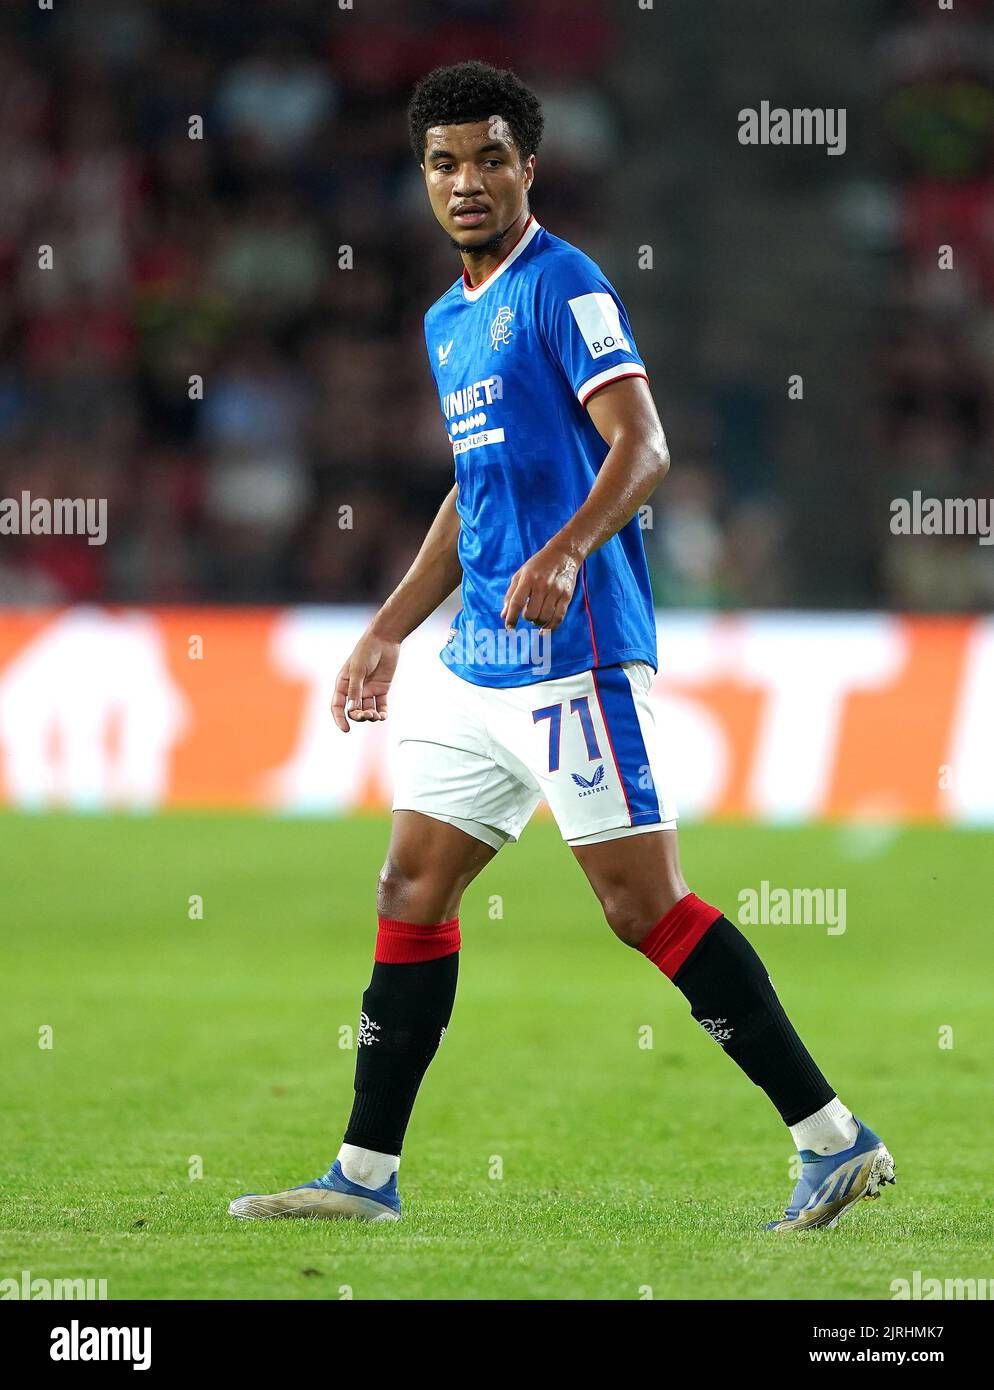 Malik Tillman de los Rangers durante el partido de clasificación de la UEFA Champions League en el PSV Stadion, Eindhoven. Fecha de la foto: Miércoles 24 de agosto de 2022. Foto de stock